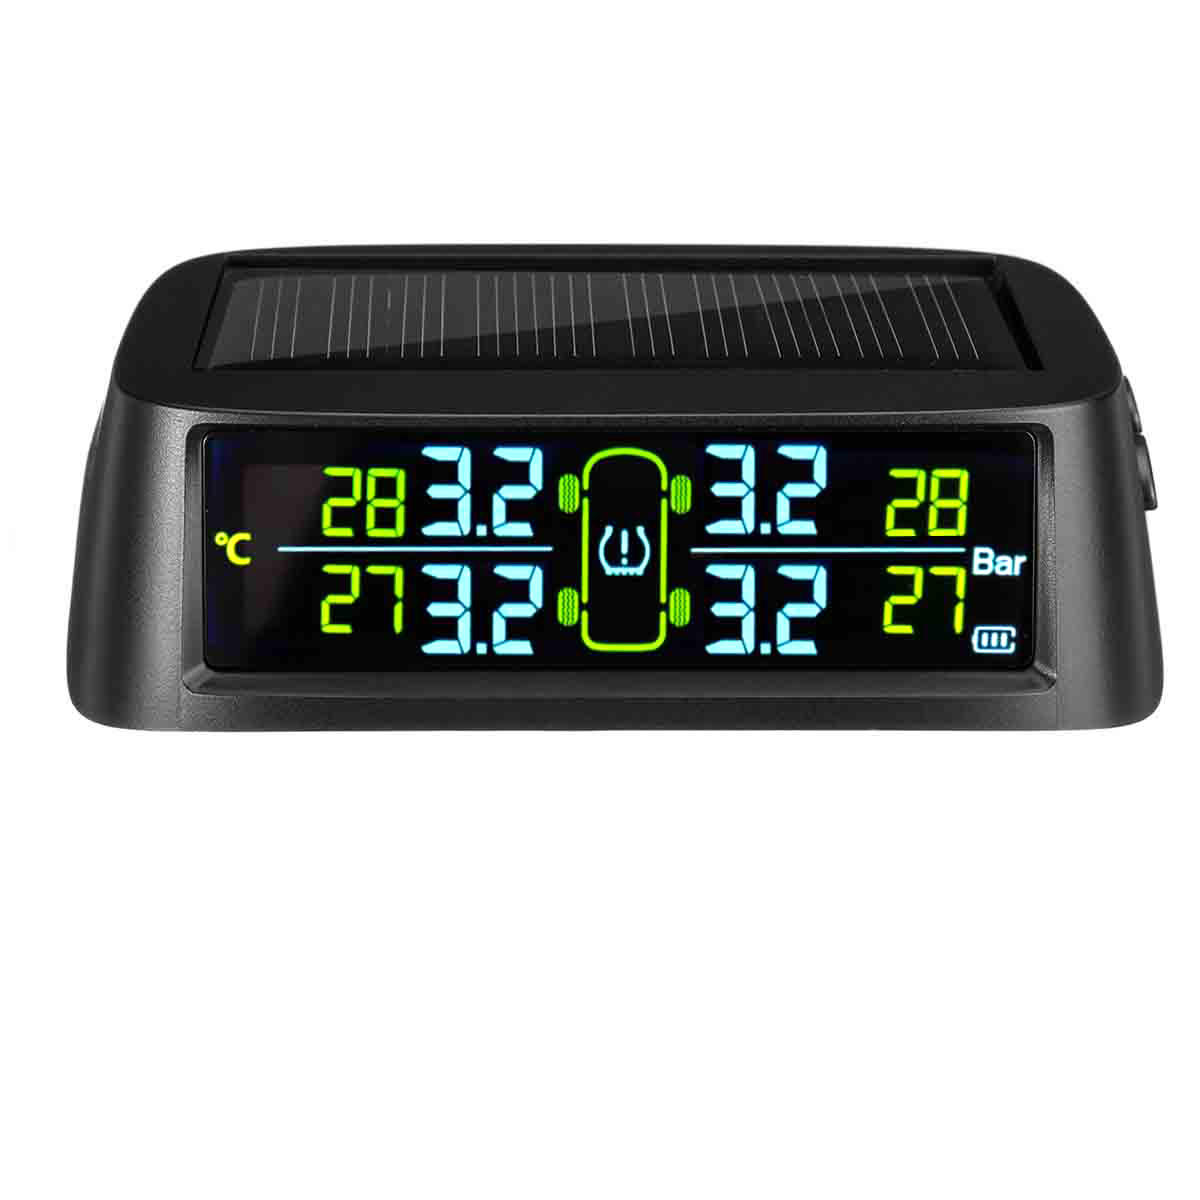 C700 Solar TPMS Temperature Tire Pressure Monitor Digital LCD Display Waterproof